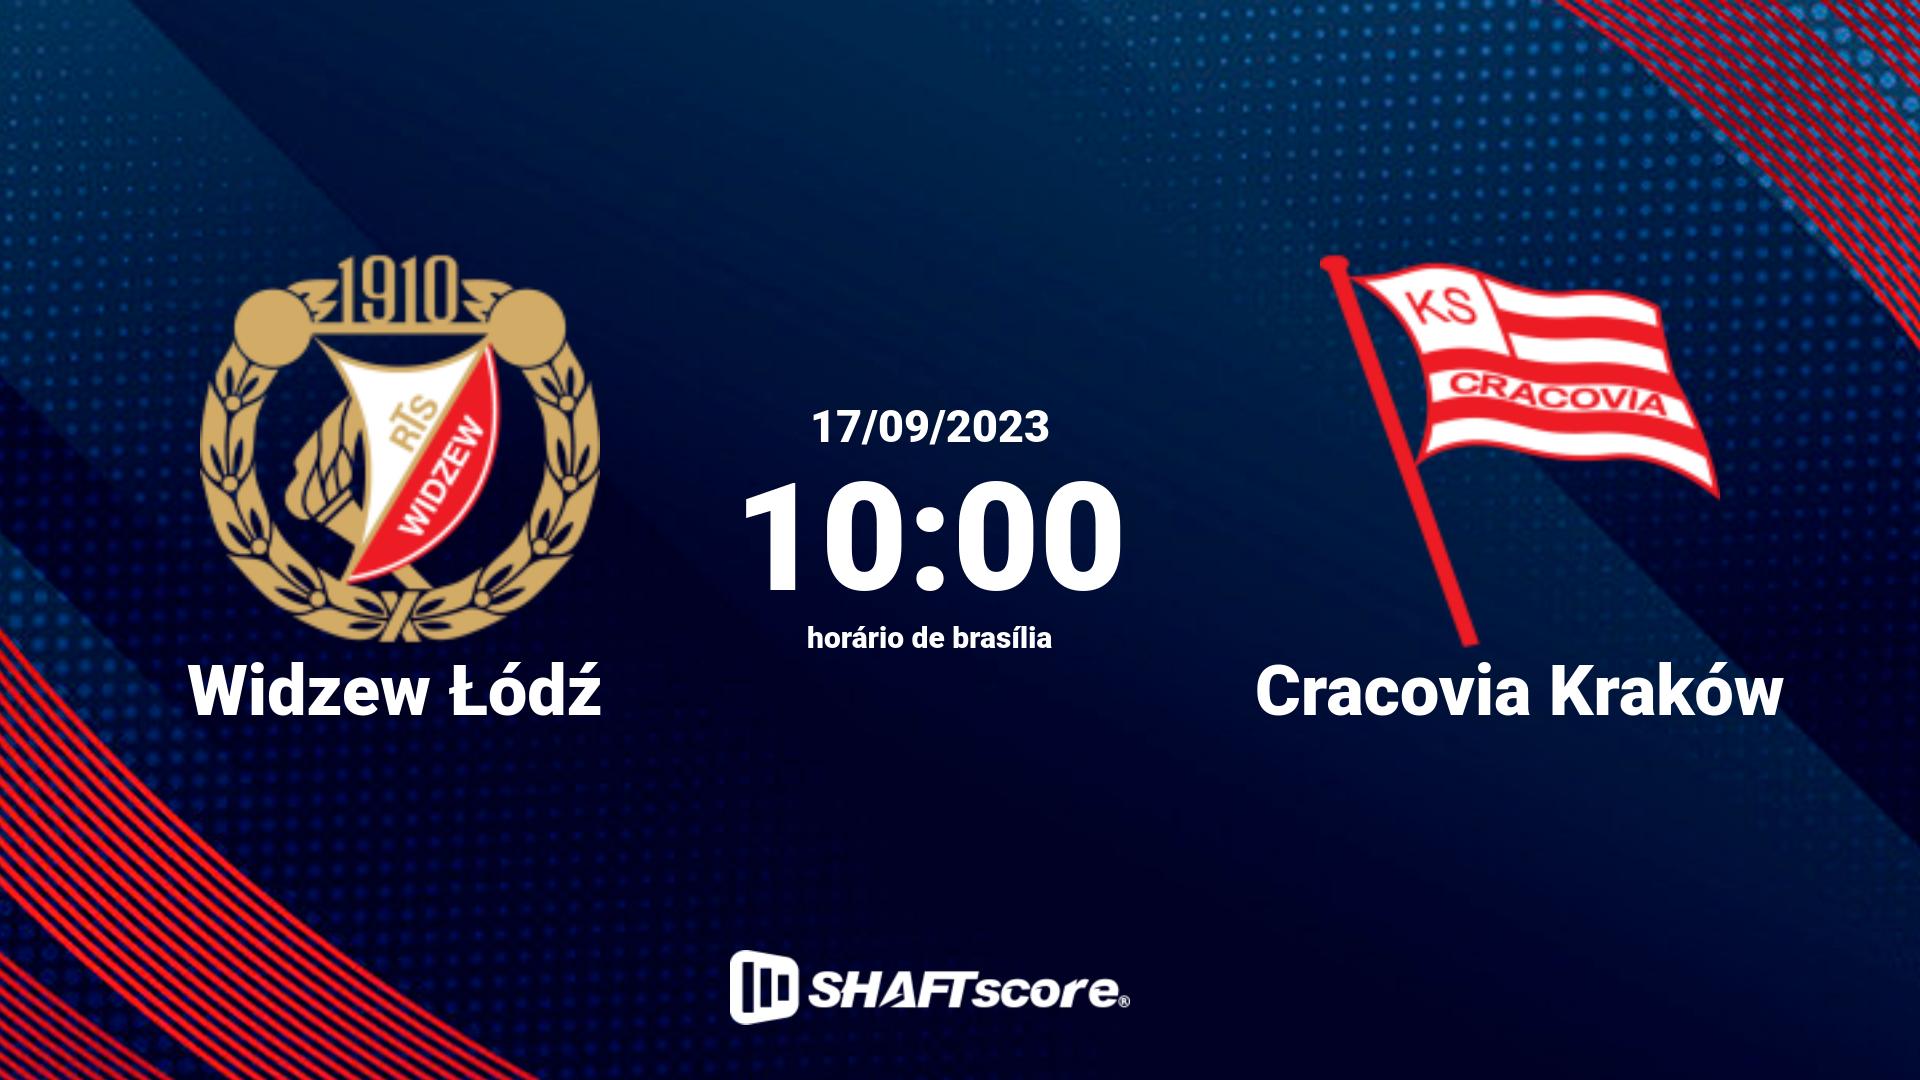 Estatísticas do jogo Widzew Łódź vs Cracovia Kraków 17.09 10:00